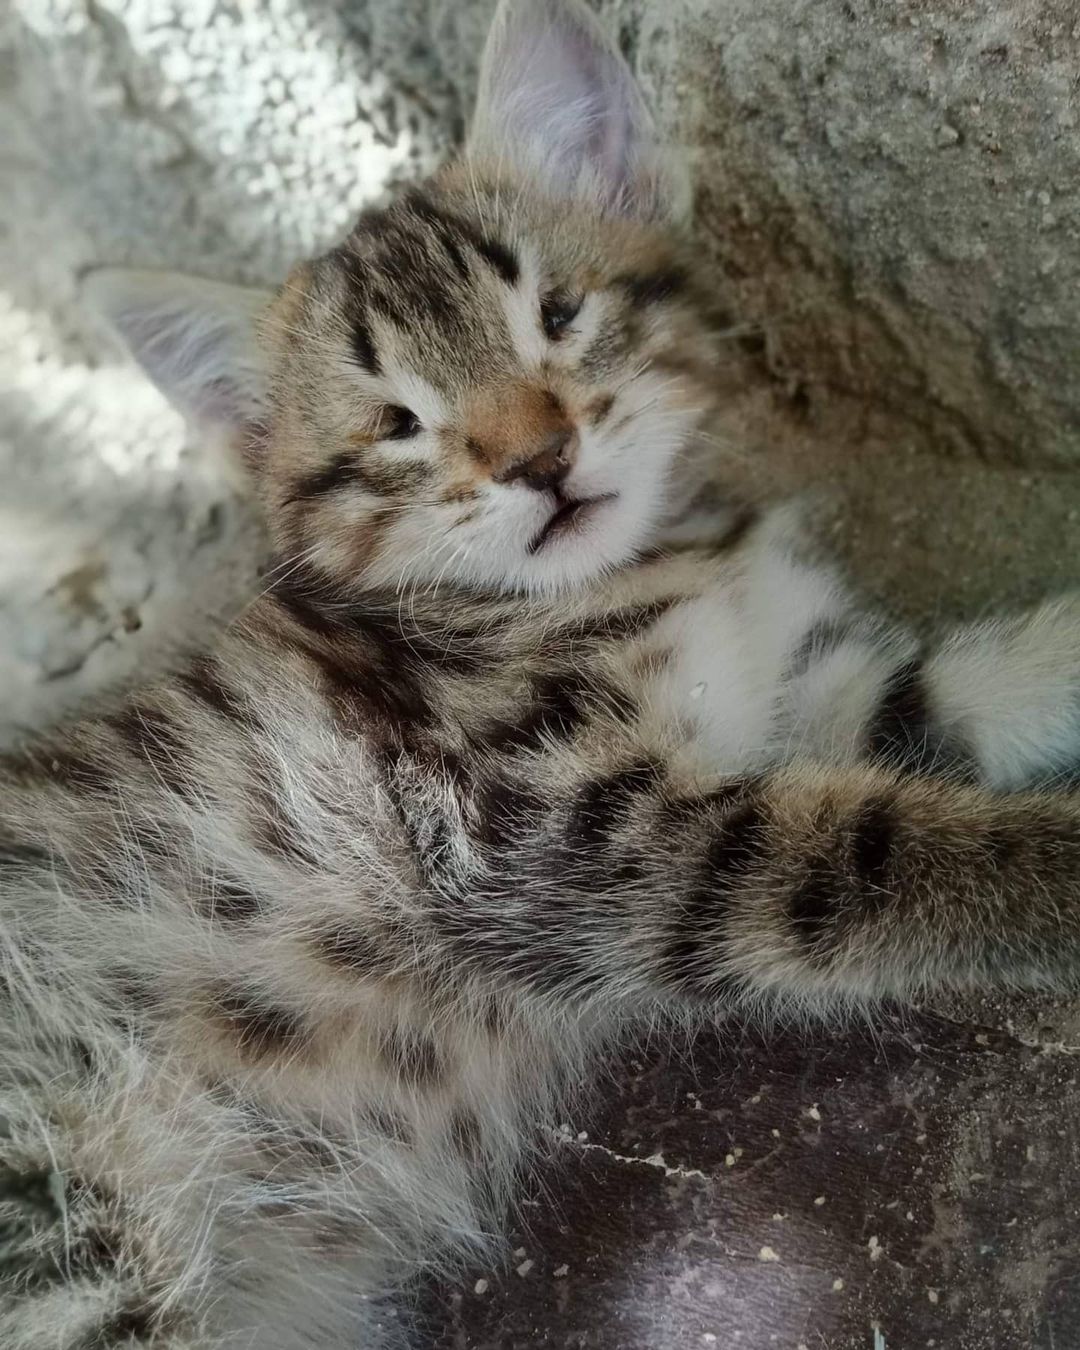 Bu bebişe acil bir ev aranıyor!, Ücretsiz Kedi, Nevşehir